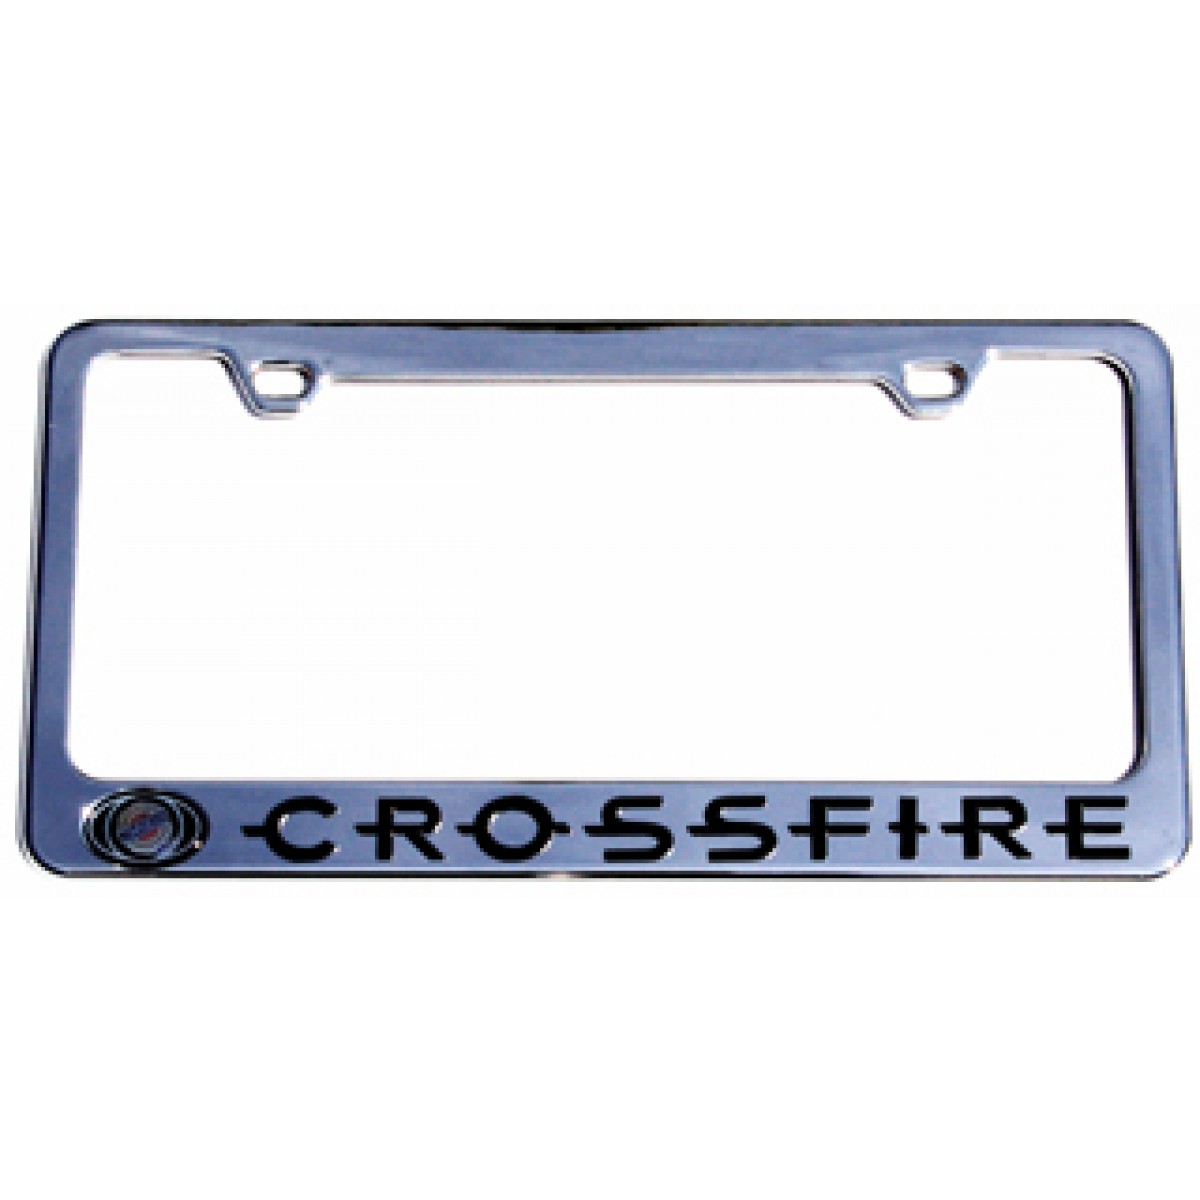 Chrysler crossfire license plate frames #3